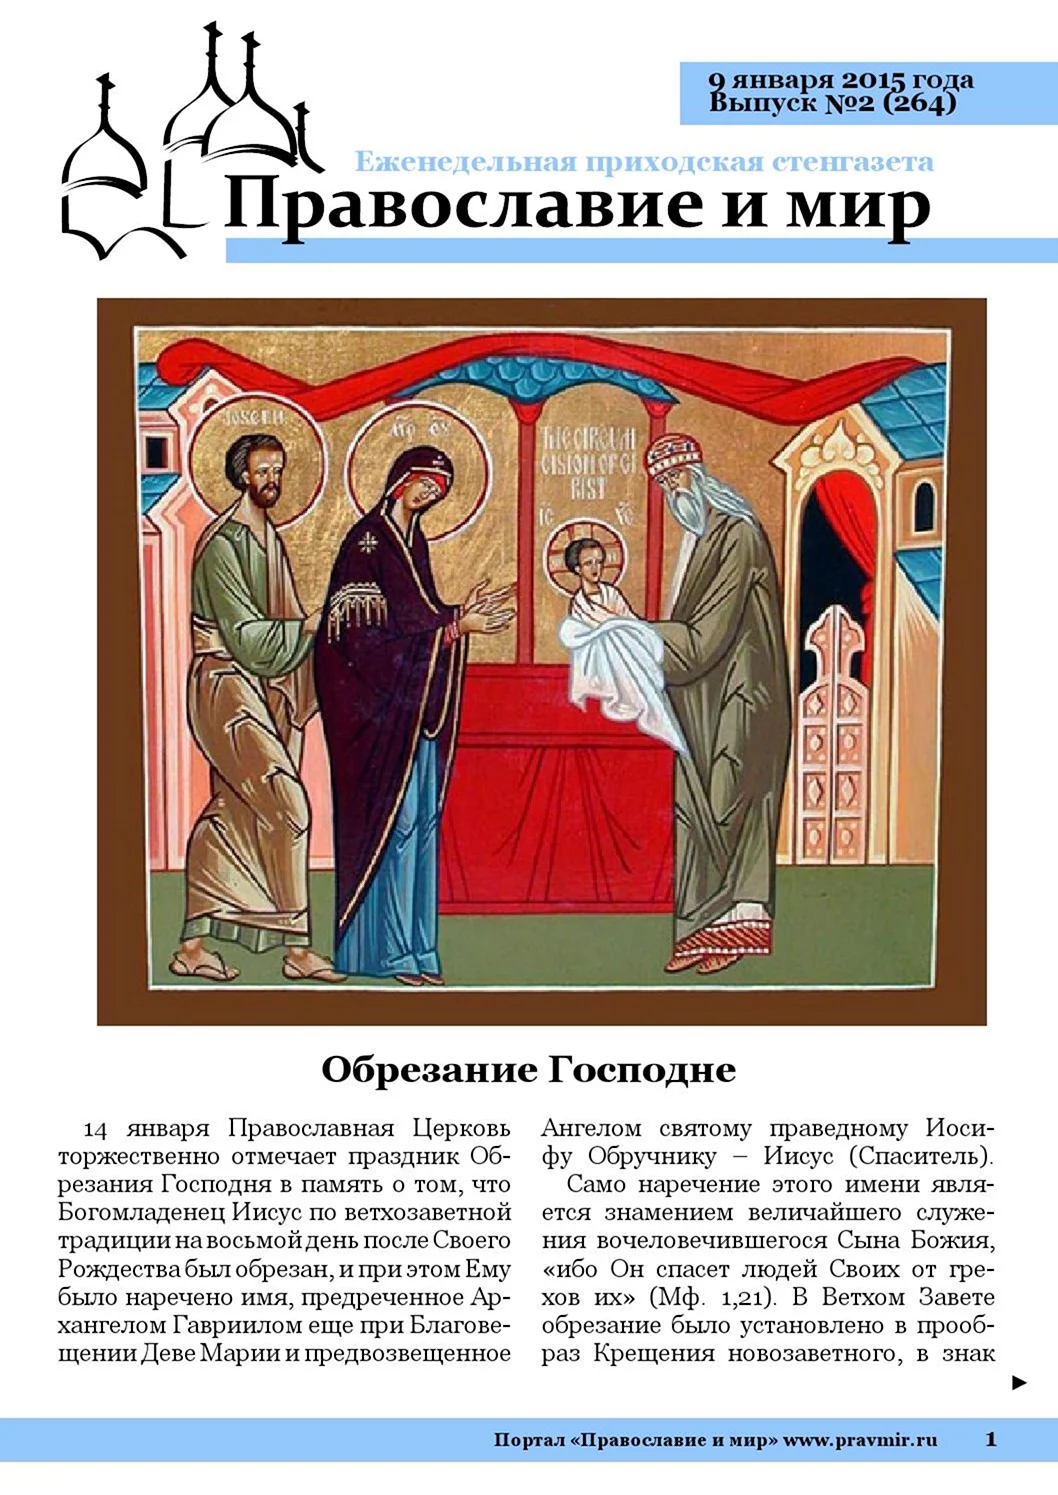 Праздник обрезания Господня у православных. Поздравление